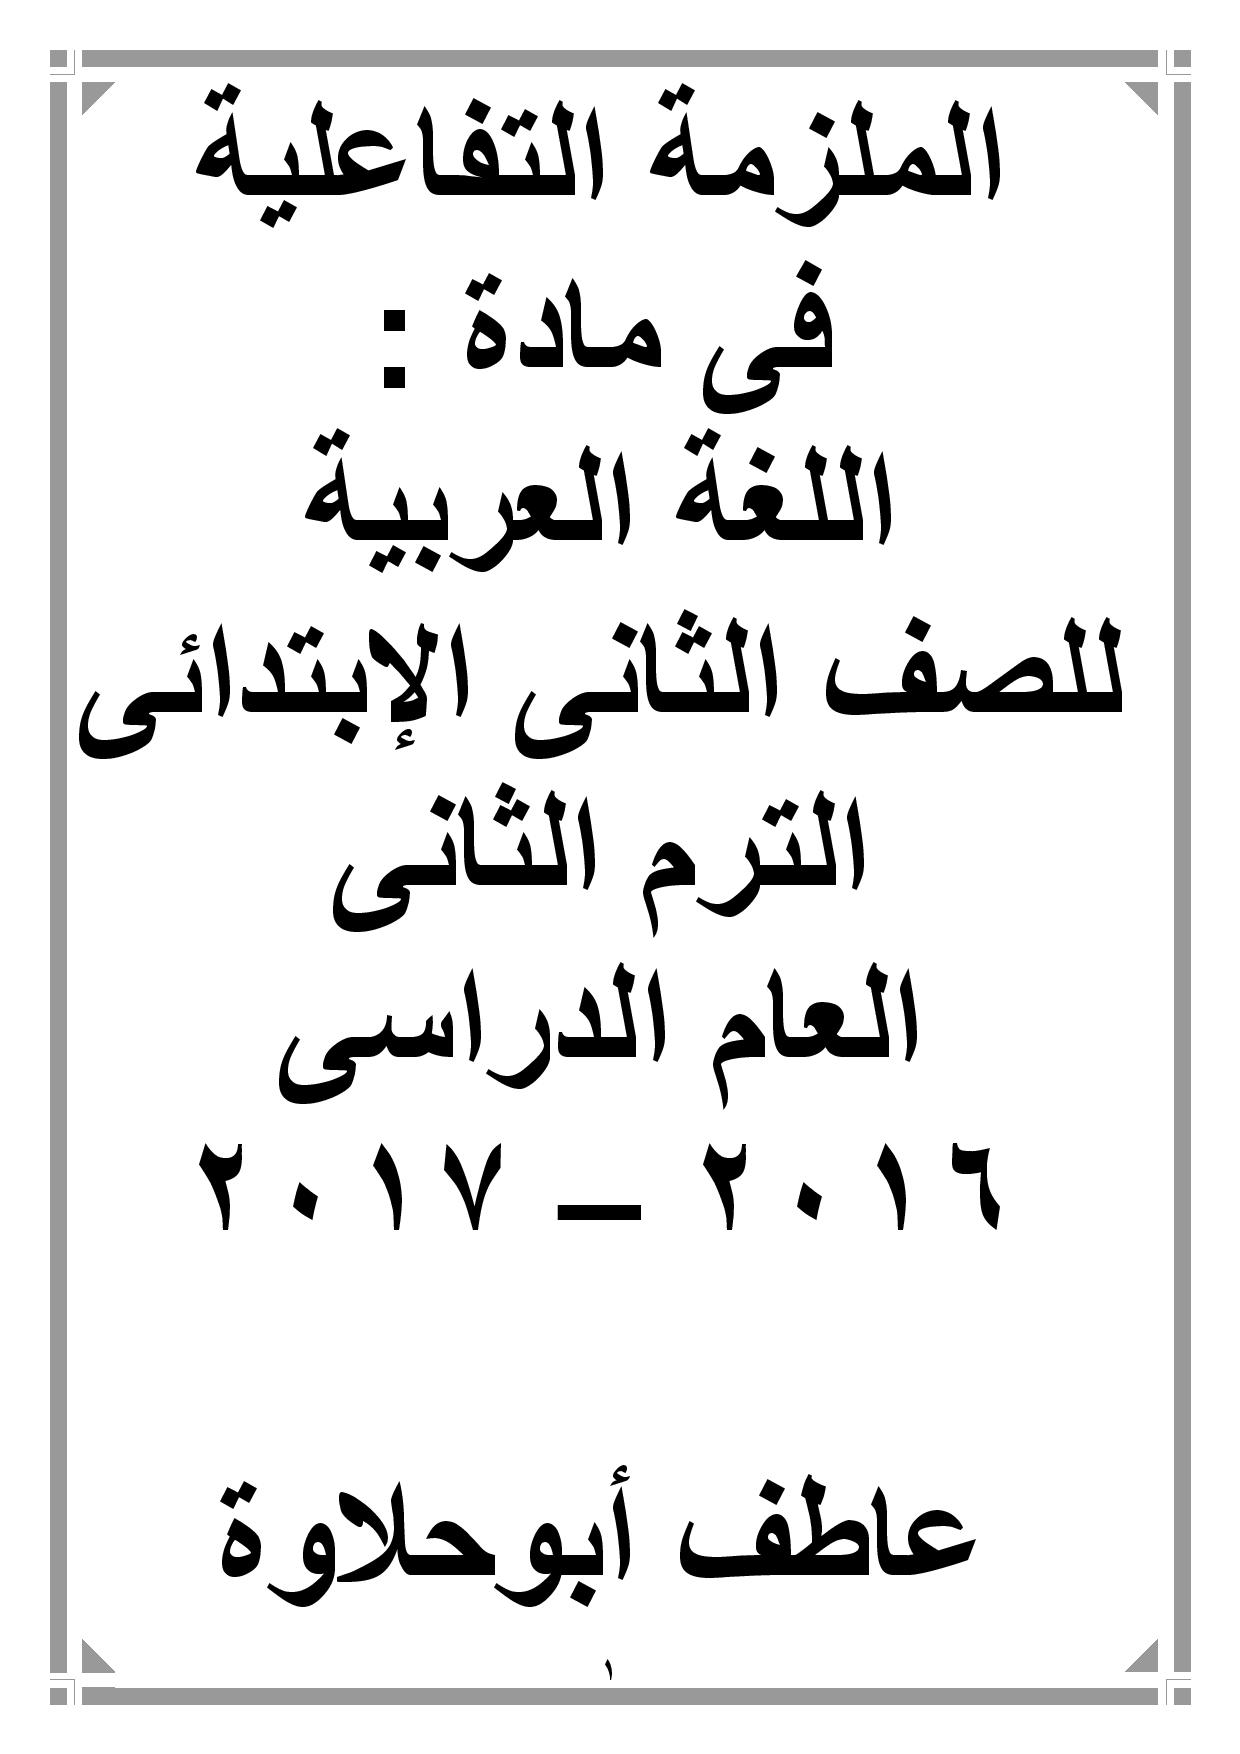 مذكرة تفاعلية في اللغة العربية للصف الثانى الابتدائى الترم الثانى